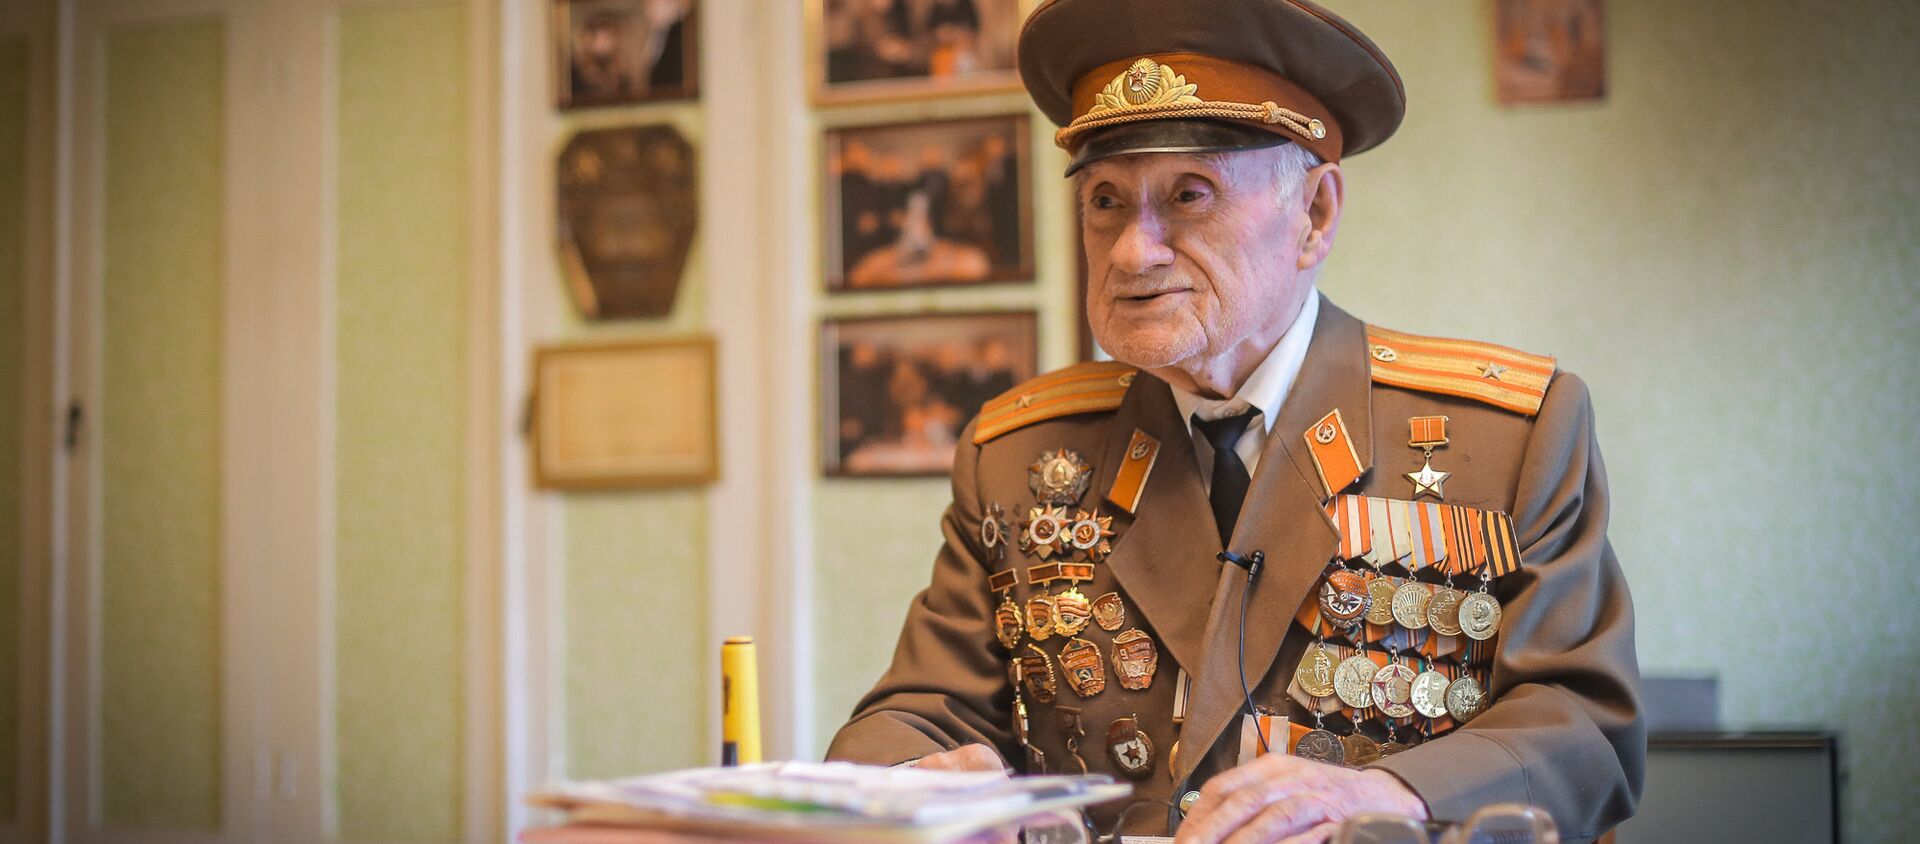 Ветеран ВОВ, майор, командир роты Николоз Чарашвили - Sputnik Грузия, 1920, 06.05.2017